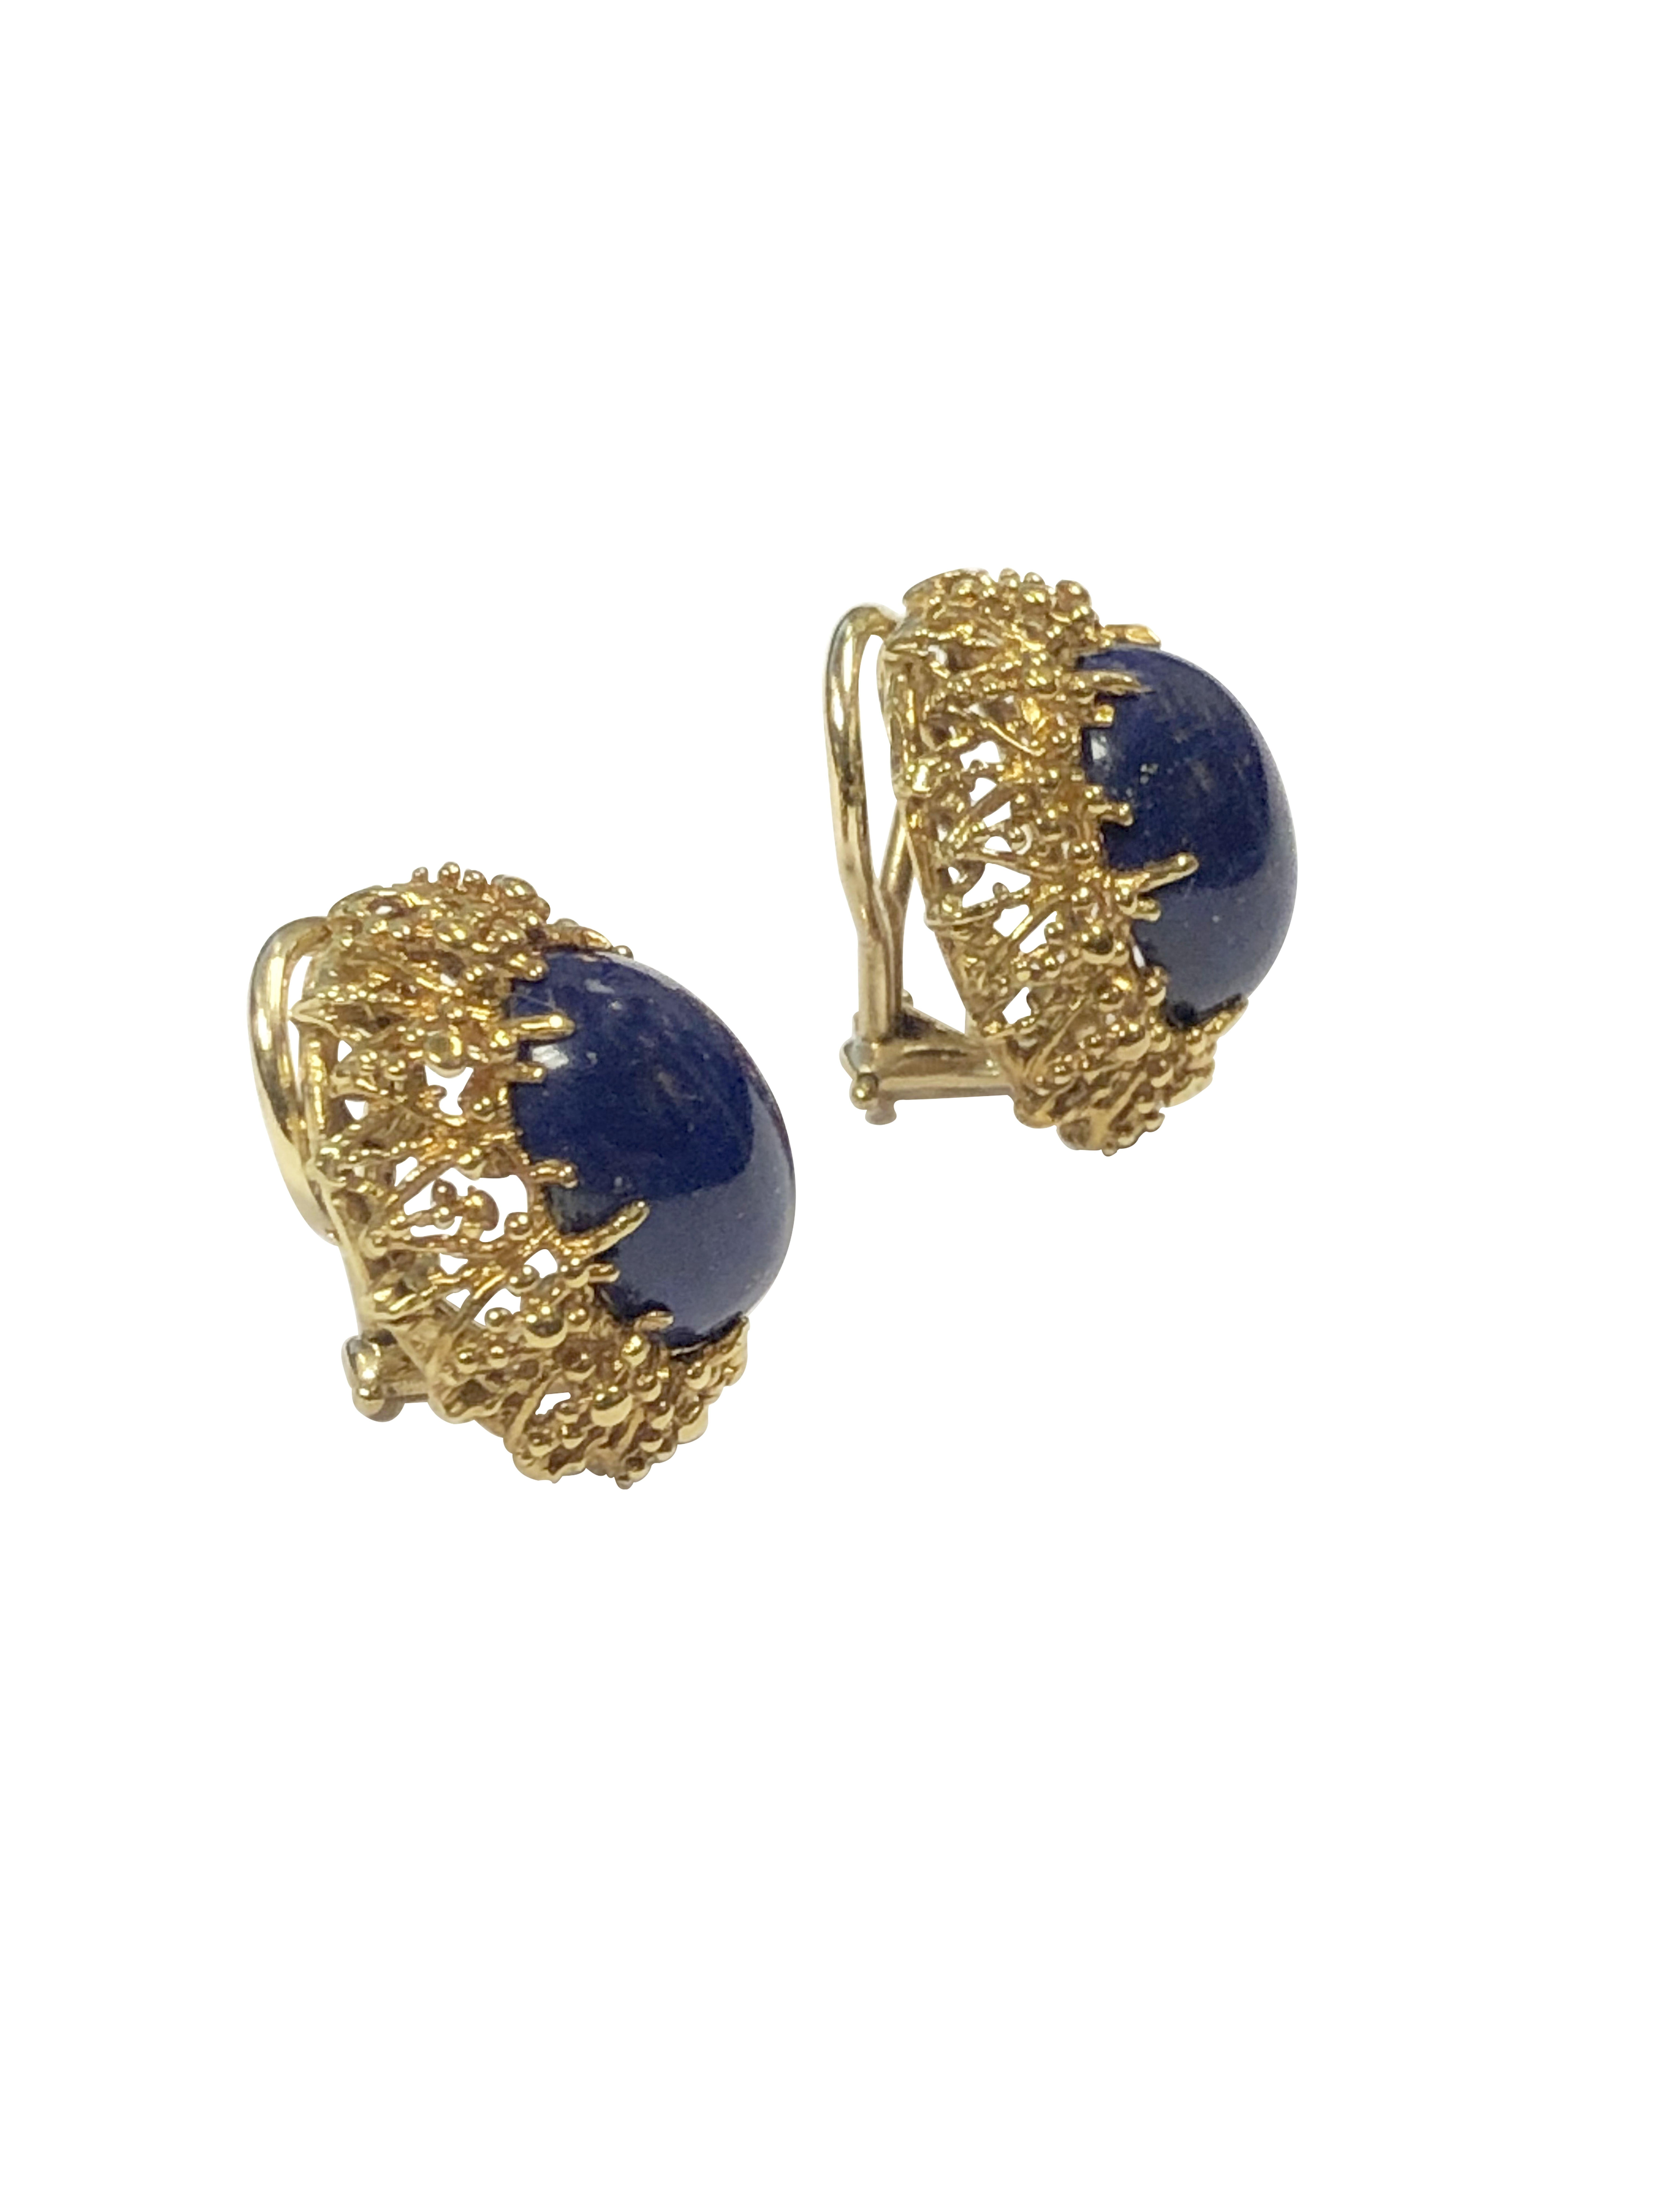 Circa 1990 Boucles d'oreilles en or jaune 18 carats de Tiffany & Company,  dans un style moderniste, les boucles d'oreilles ovales mesurent 3/4 X 3/4 pouce et sont serties au centre d'un Lapis Lazulli ovale de couleur bleu profond avec des